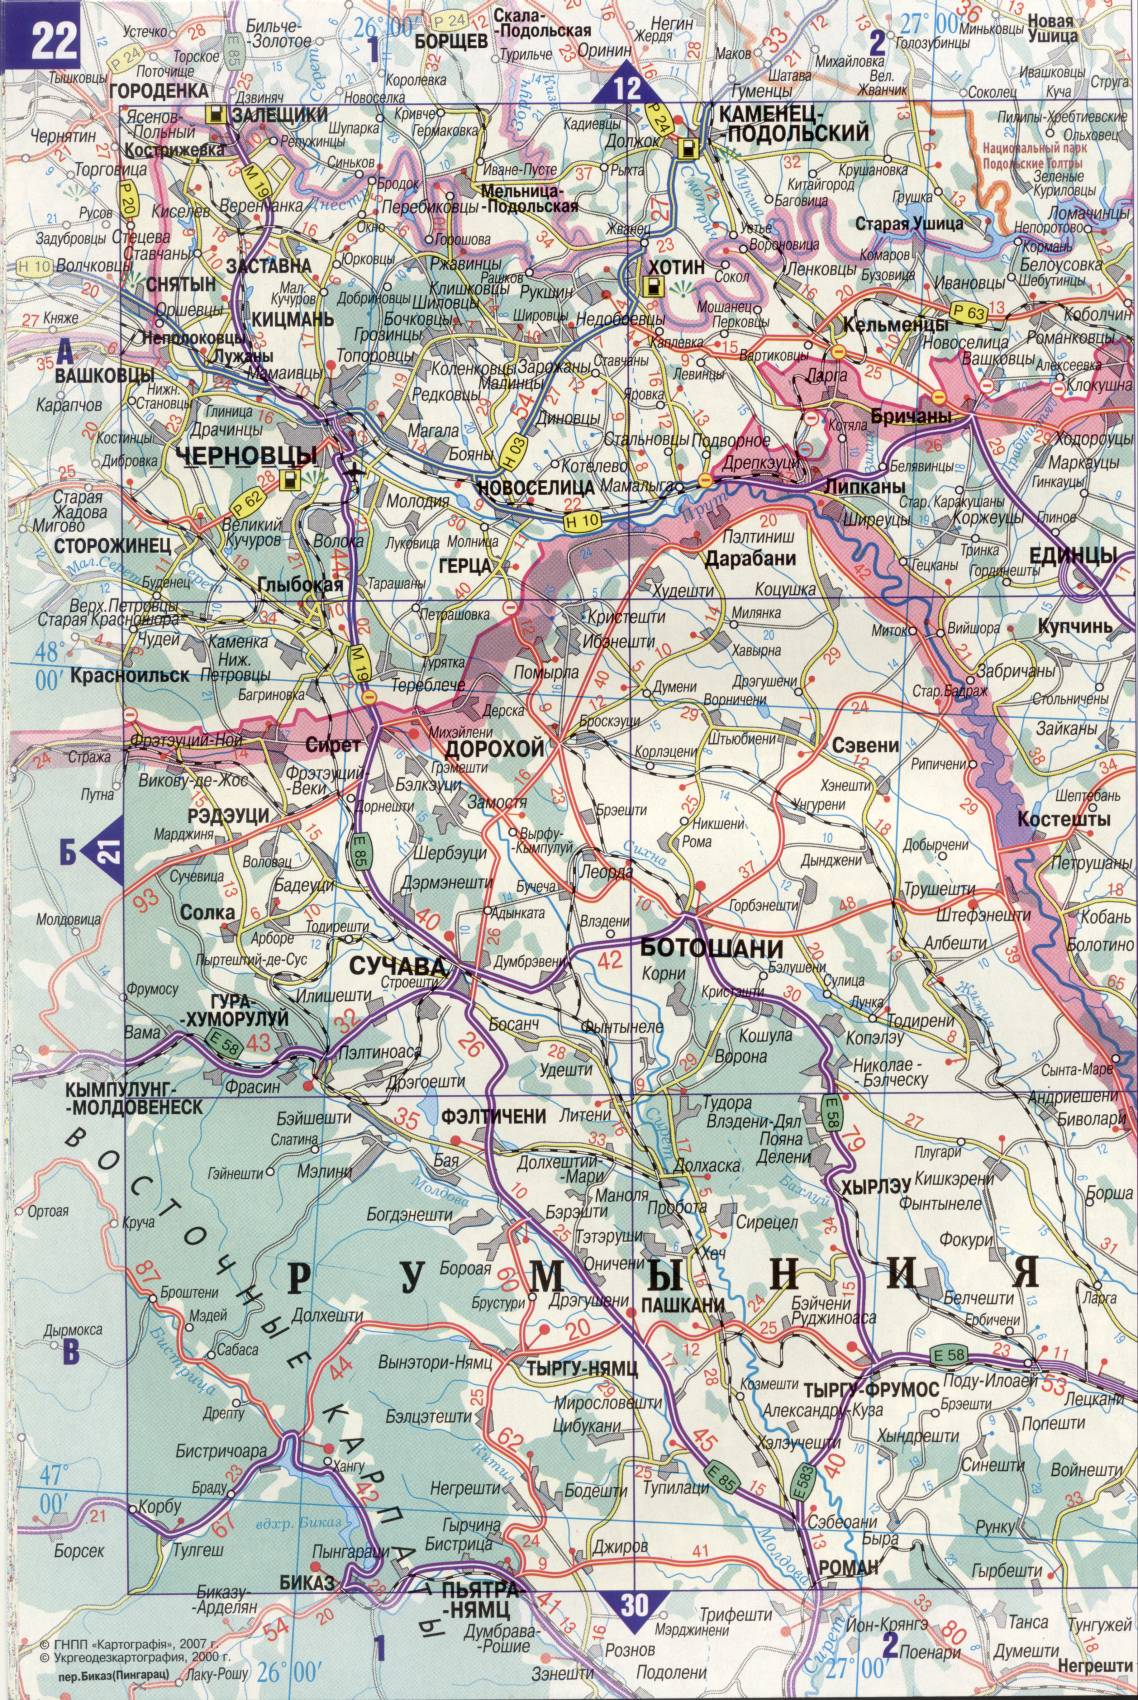 Карта Украины. Подробная карта дорог Украина из автомобильног атласа. скачать бесплатно, C2